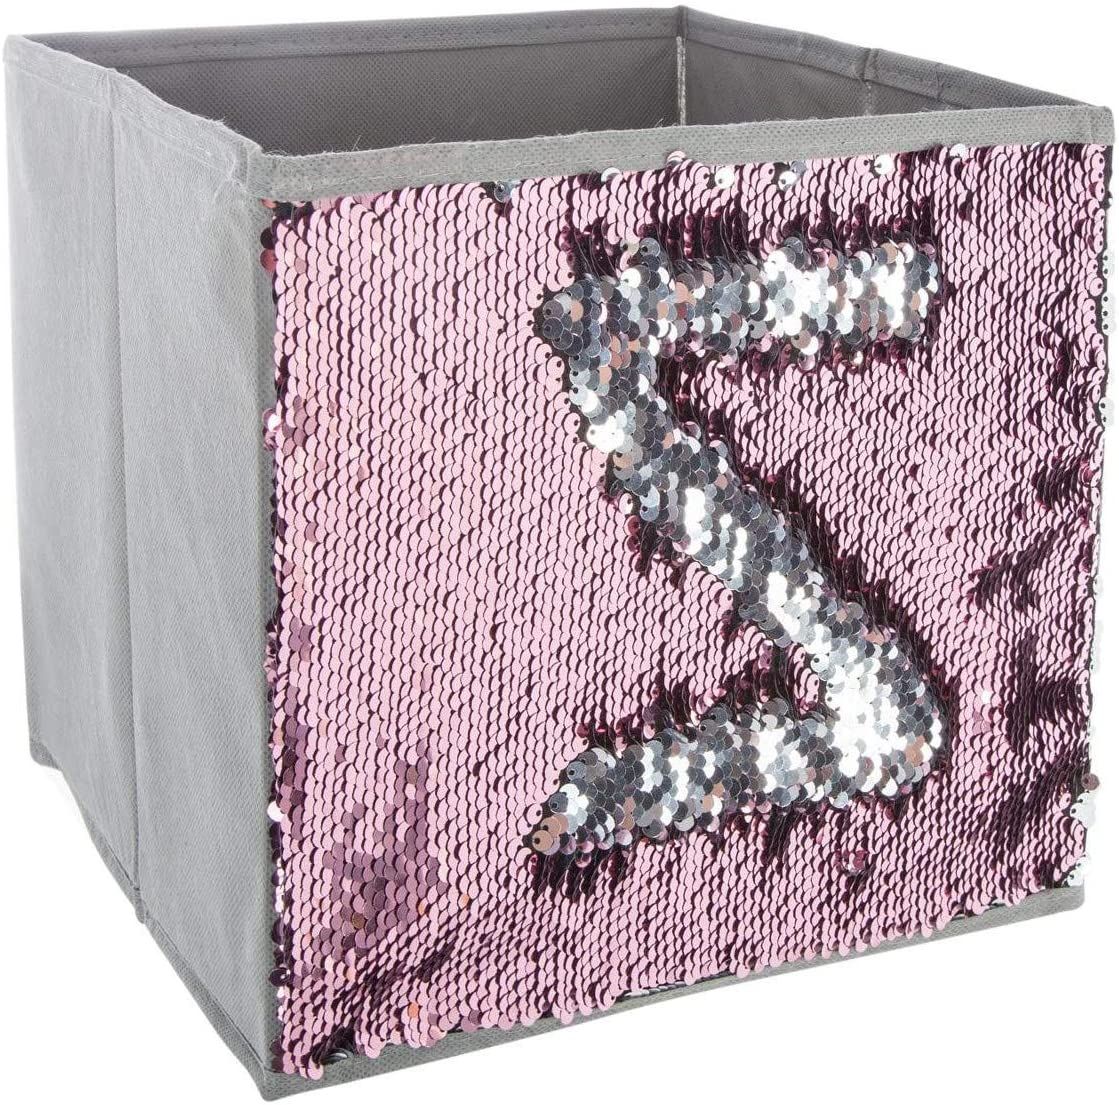 Atmosphera for kids Úložný box SEQUIN, barva šedá, 24 x 23 x 24 cm - EDAXO.CZ s.r.o.